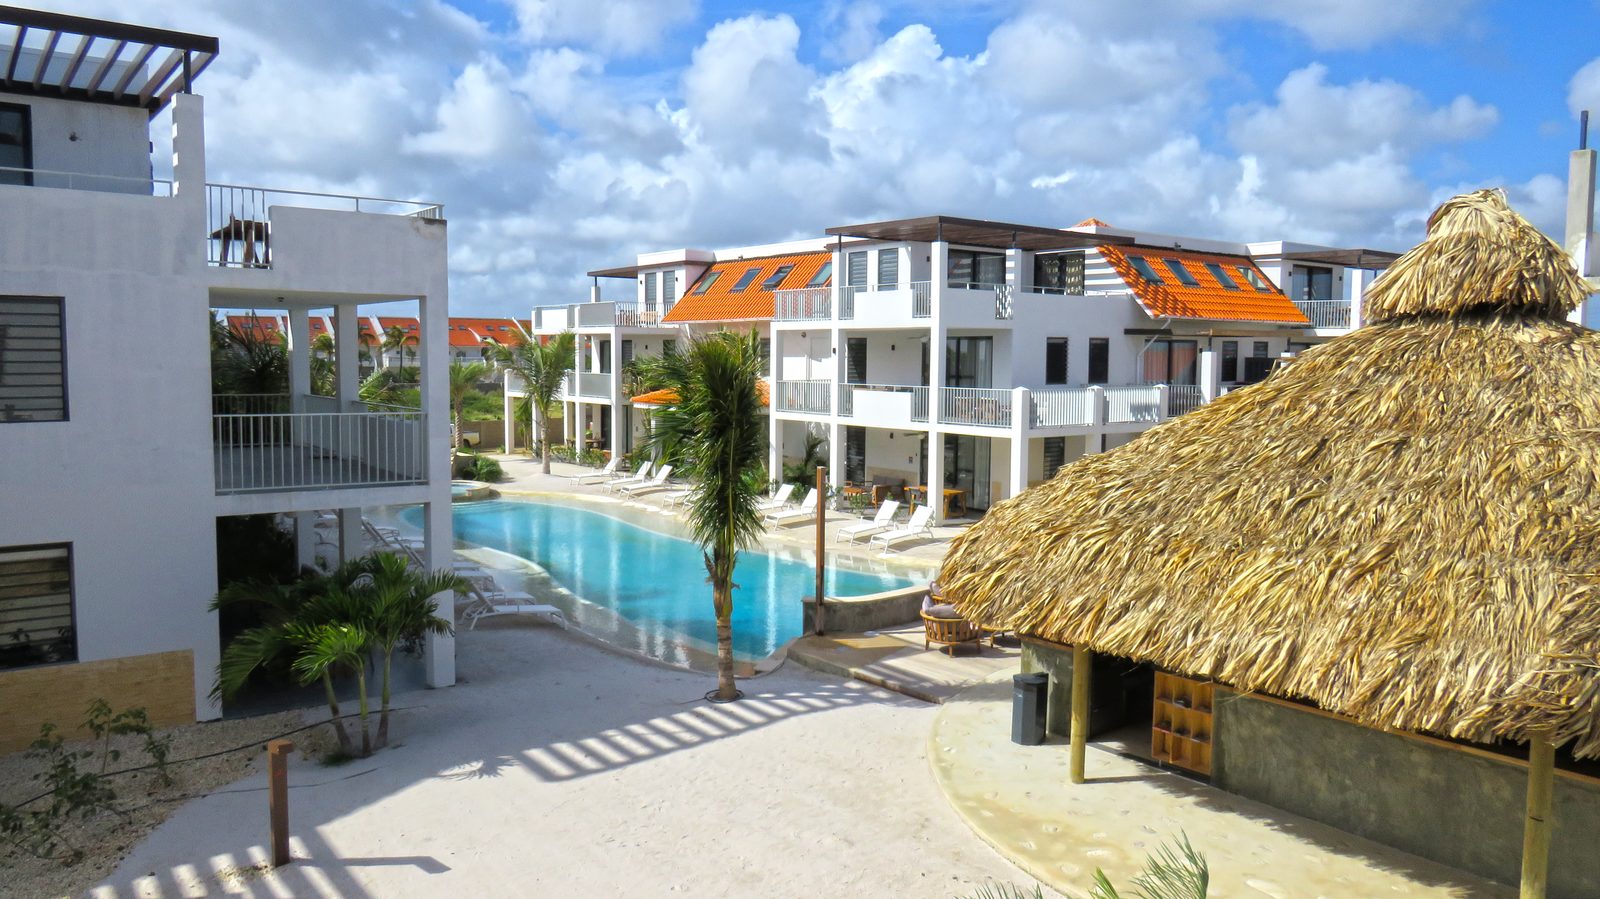 Enquanto estiver em Bonaire, pode ficar no Resort Bonaire. Luxuosos apartamentos equipados com todo o conforto que poderia desejar. Veja os nossos alojamentos disponíveis!